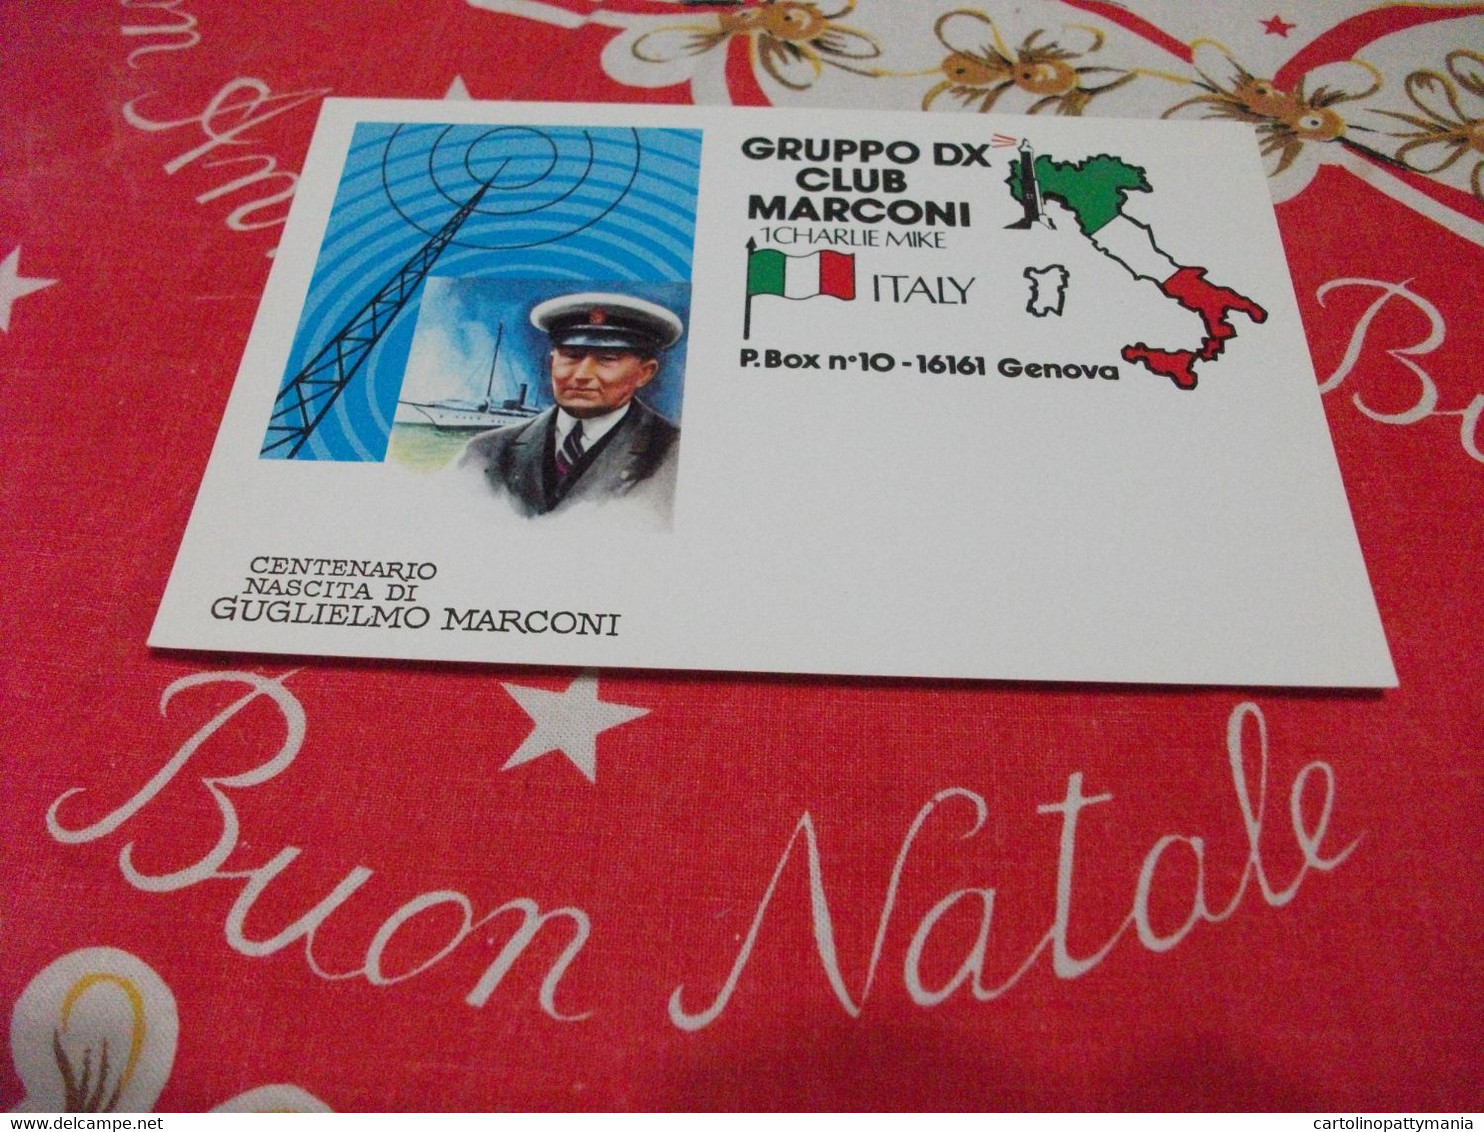 Centenario Nascita Di Guglielmo Marconi QLS GRUPPODX CLUB MARCONI NOBEL PER LA FISICA 1909 - Prix Nobel